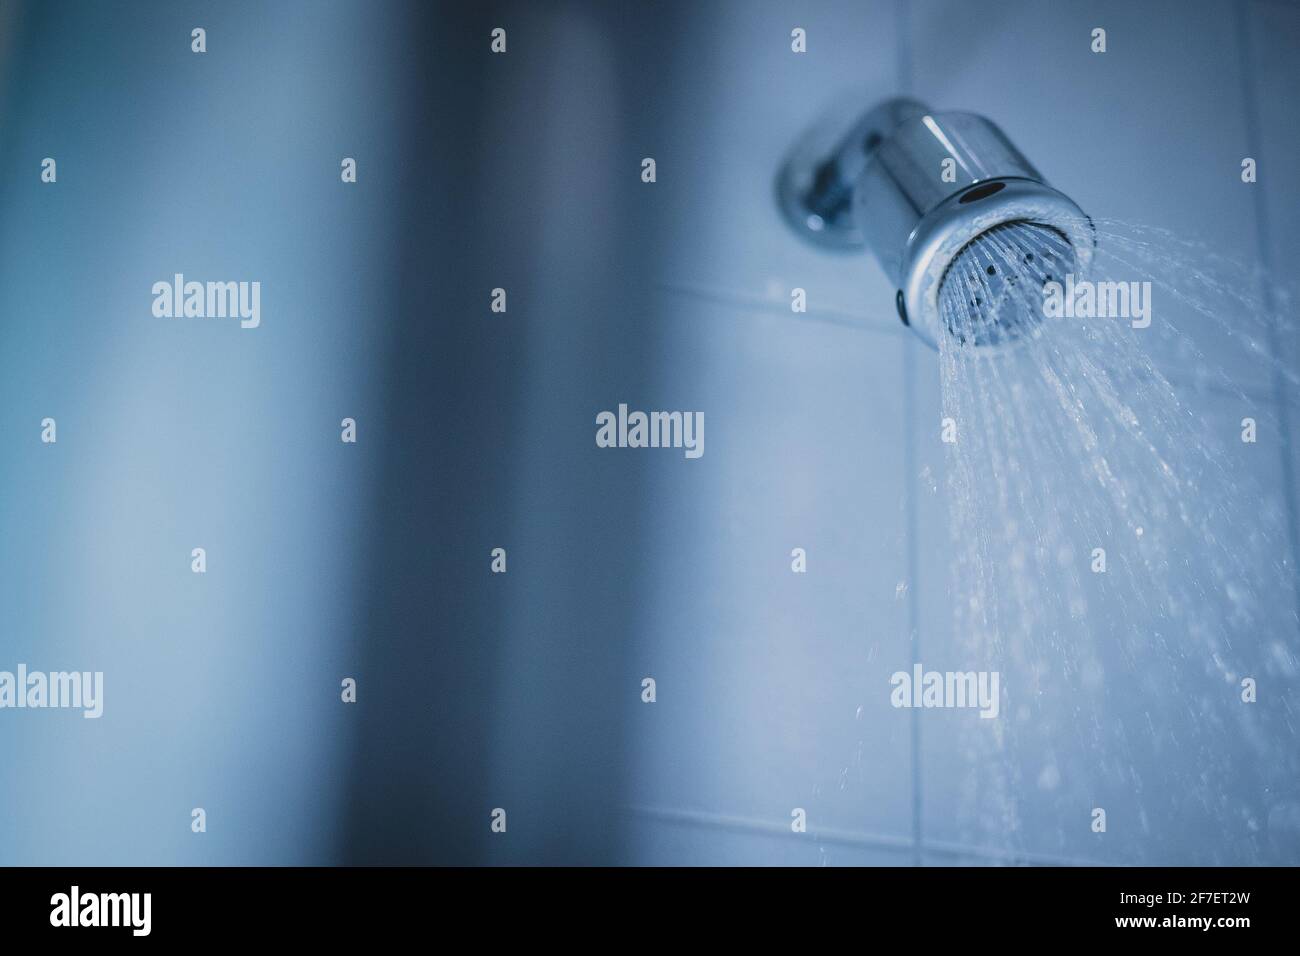 Schmutziger Duschkopf wirth spritzt Wasser aus der Dusche. Schmutzige Dusche  im Badezimmer, Kalk- oder Kalkrückstände, die um die Düsen herum sichtbar  sind Stockfotografie - Alamy